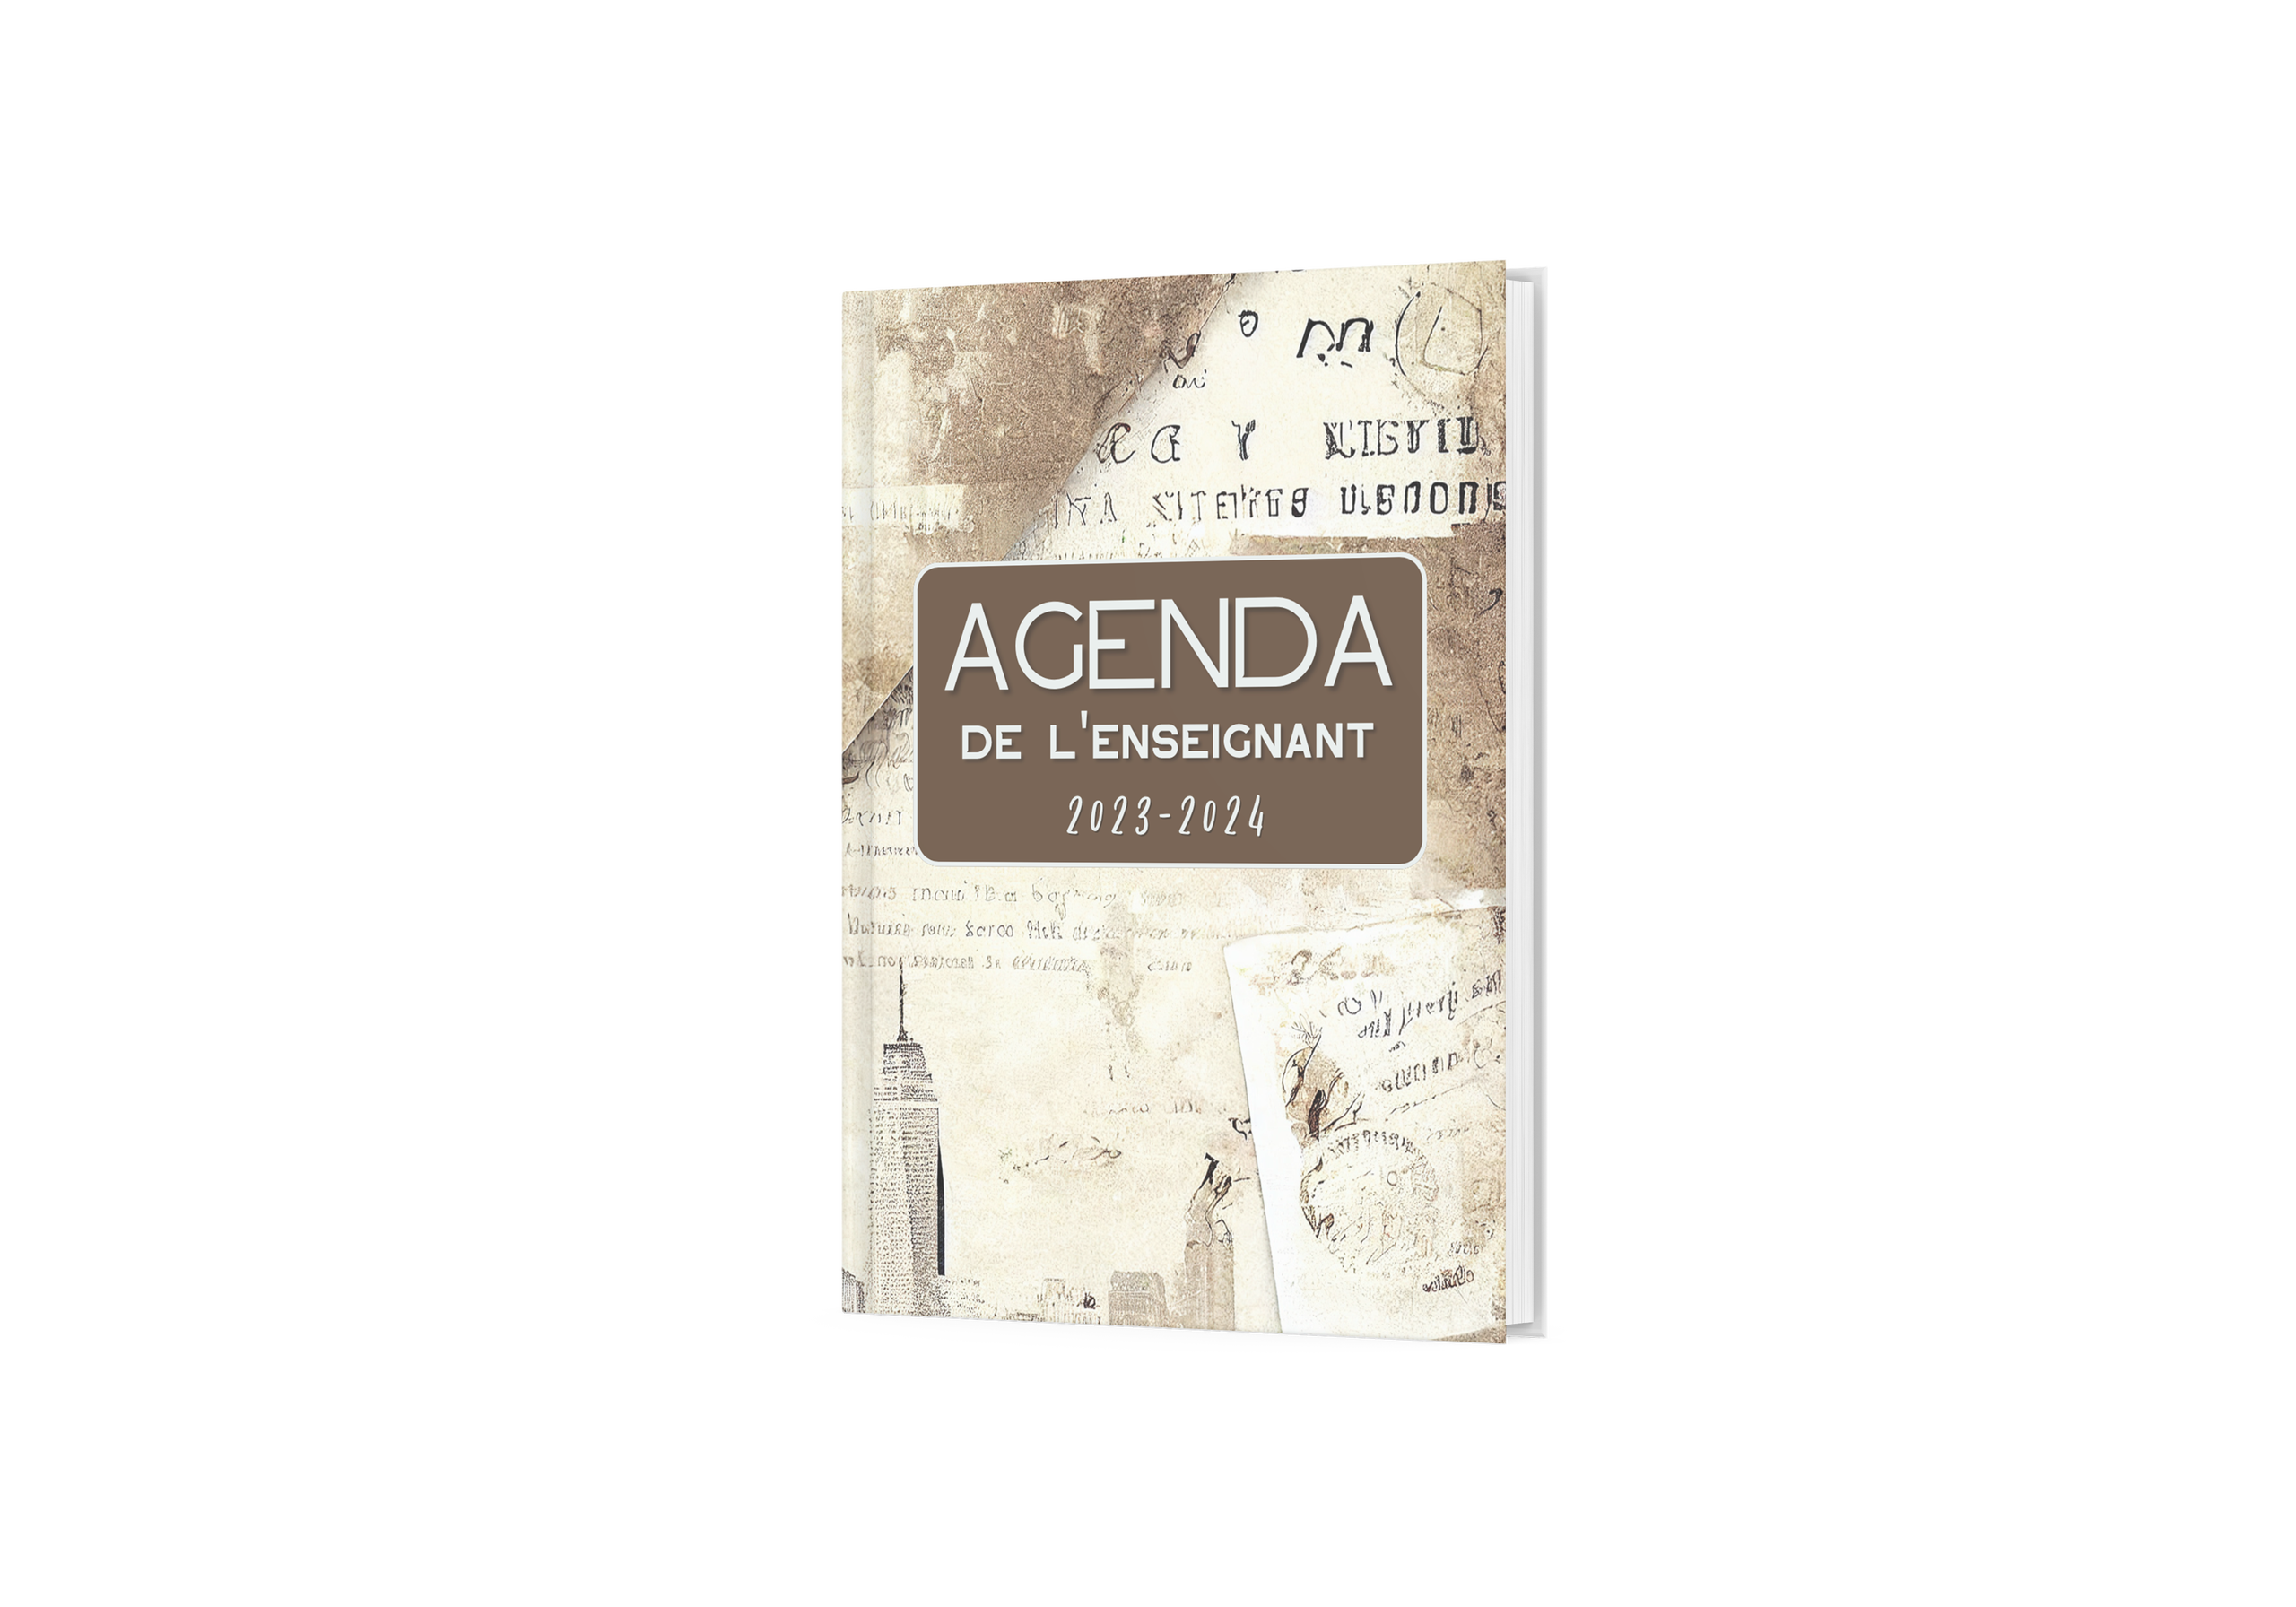 2023-2024 Agenda Semainier: agenda 2023 2024 semainier a4 / agenda 2023  2024 semainier / agenda 2023 2024 semainier pour papa / agenda 2023 2024  grand